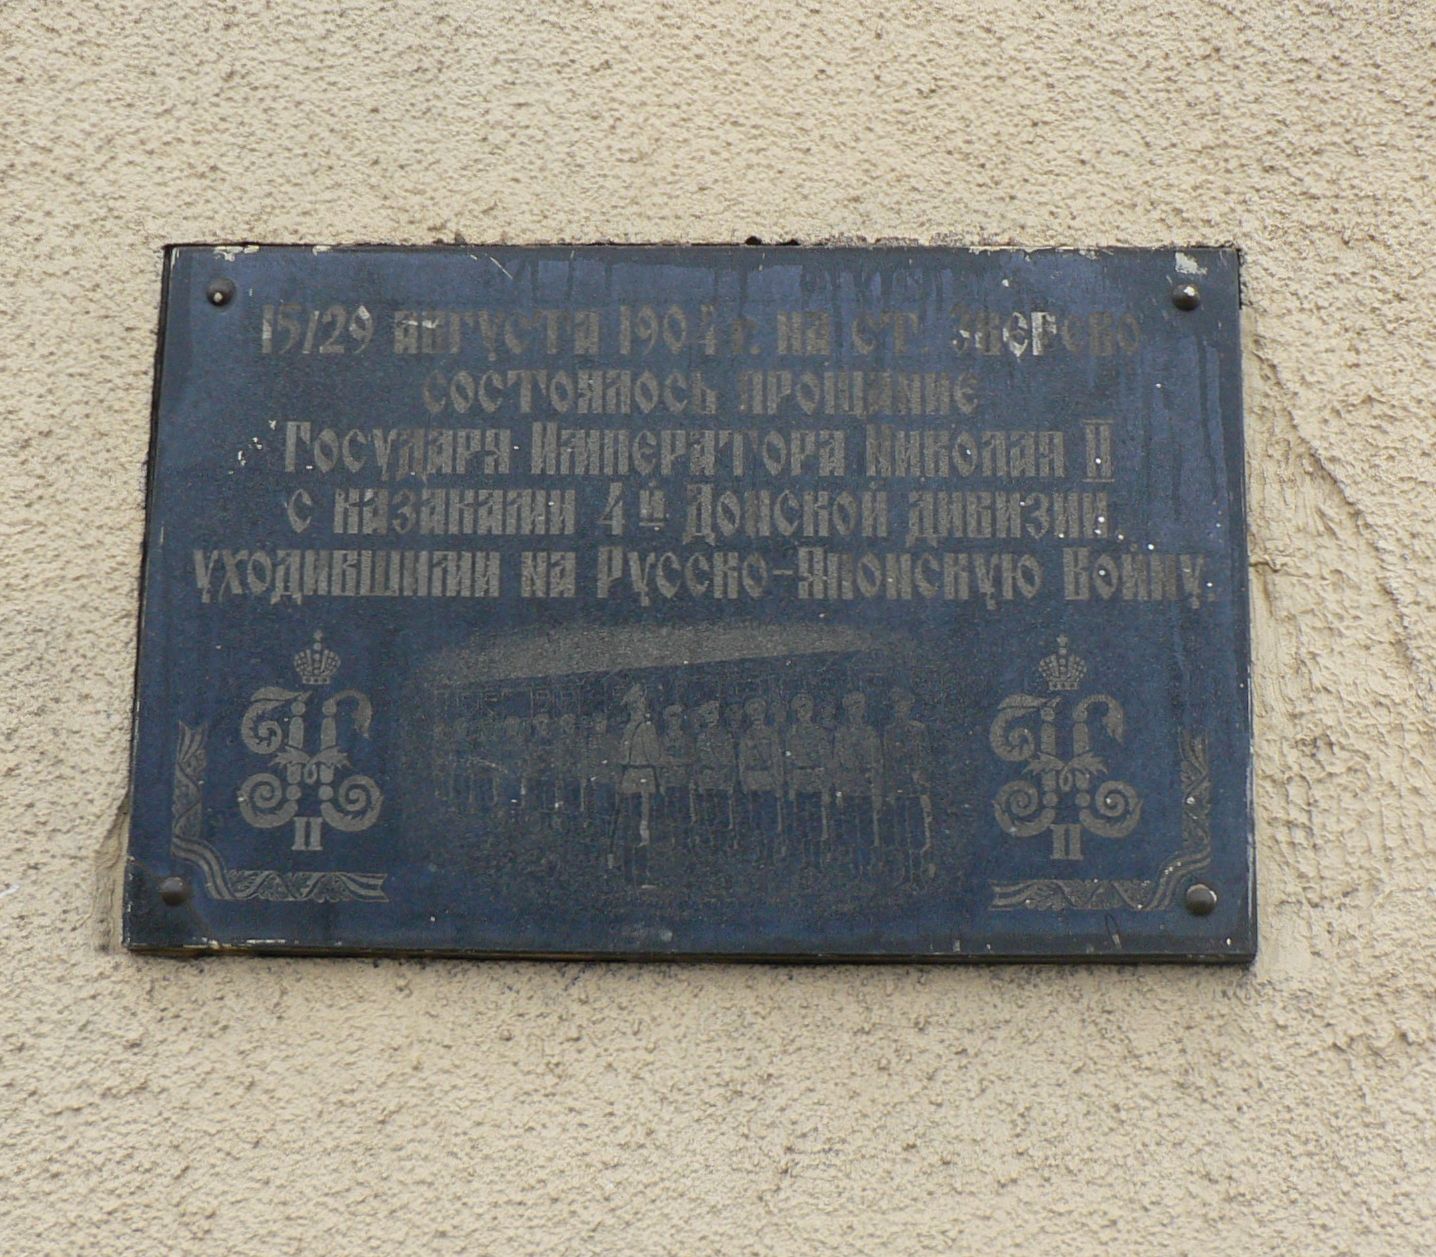 В 1904 году на станции Зверево был царь Николай Второй. авторы сайта